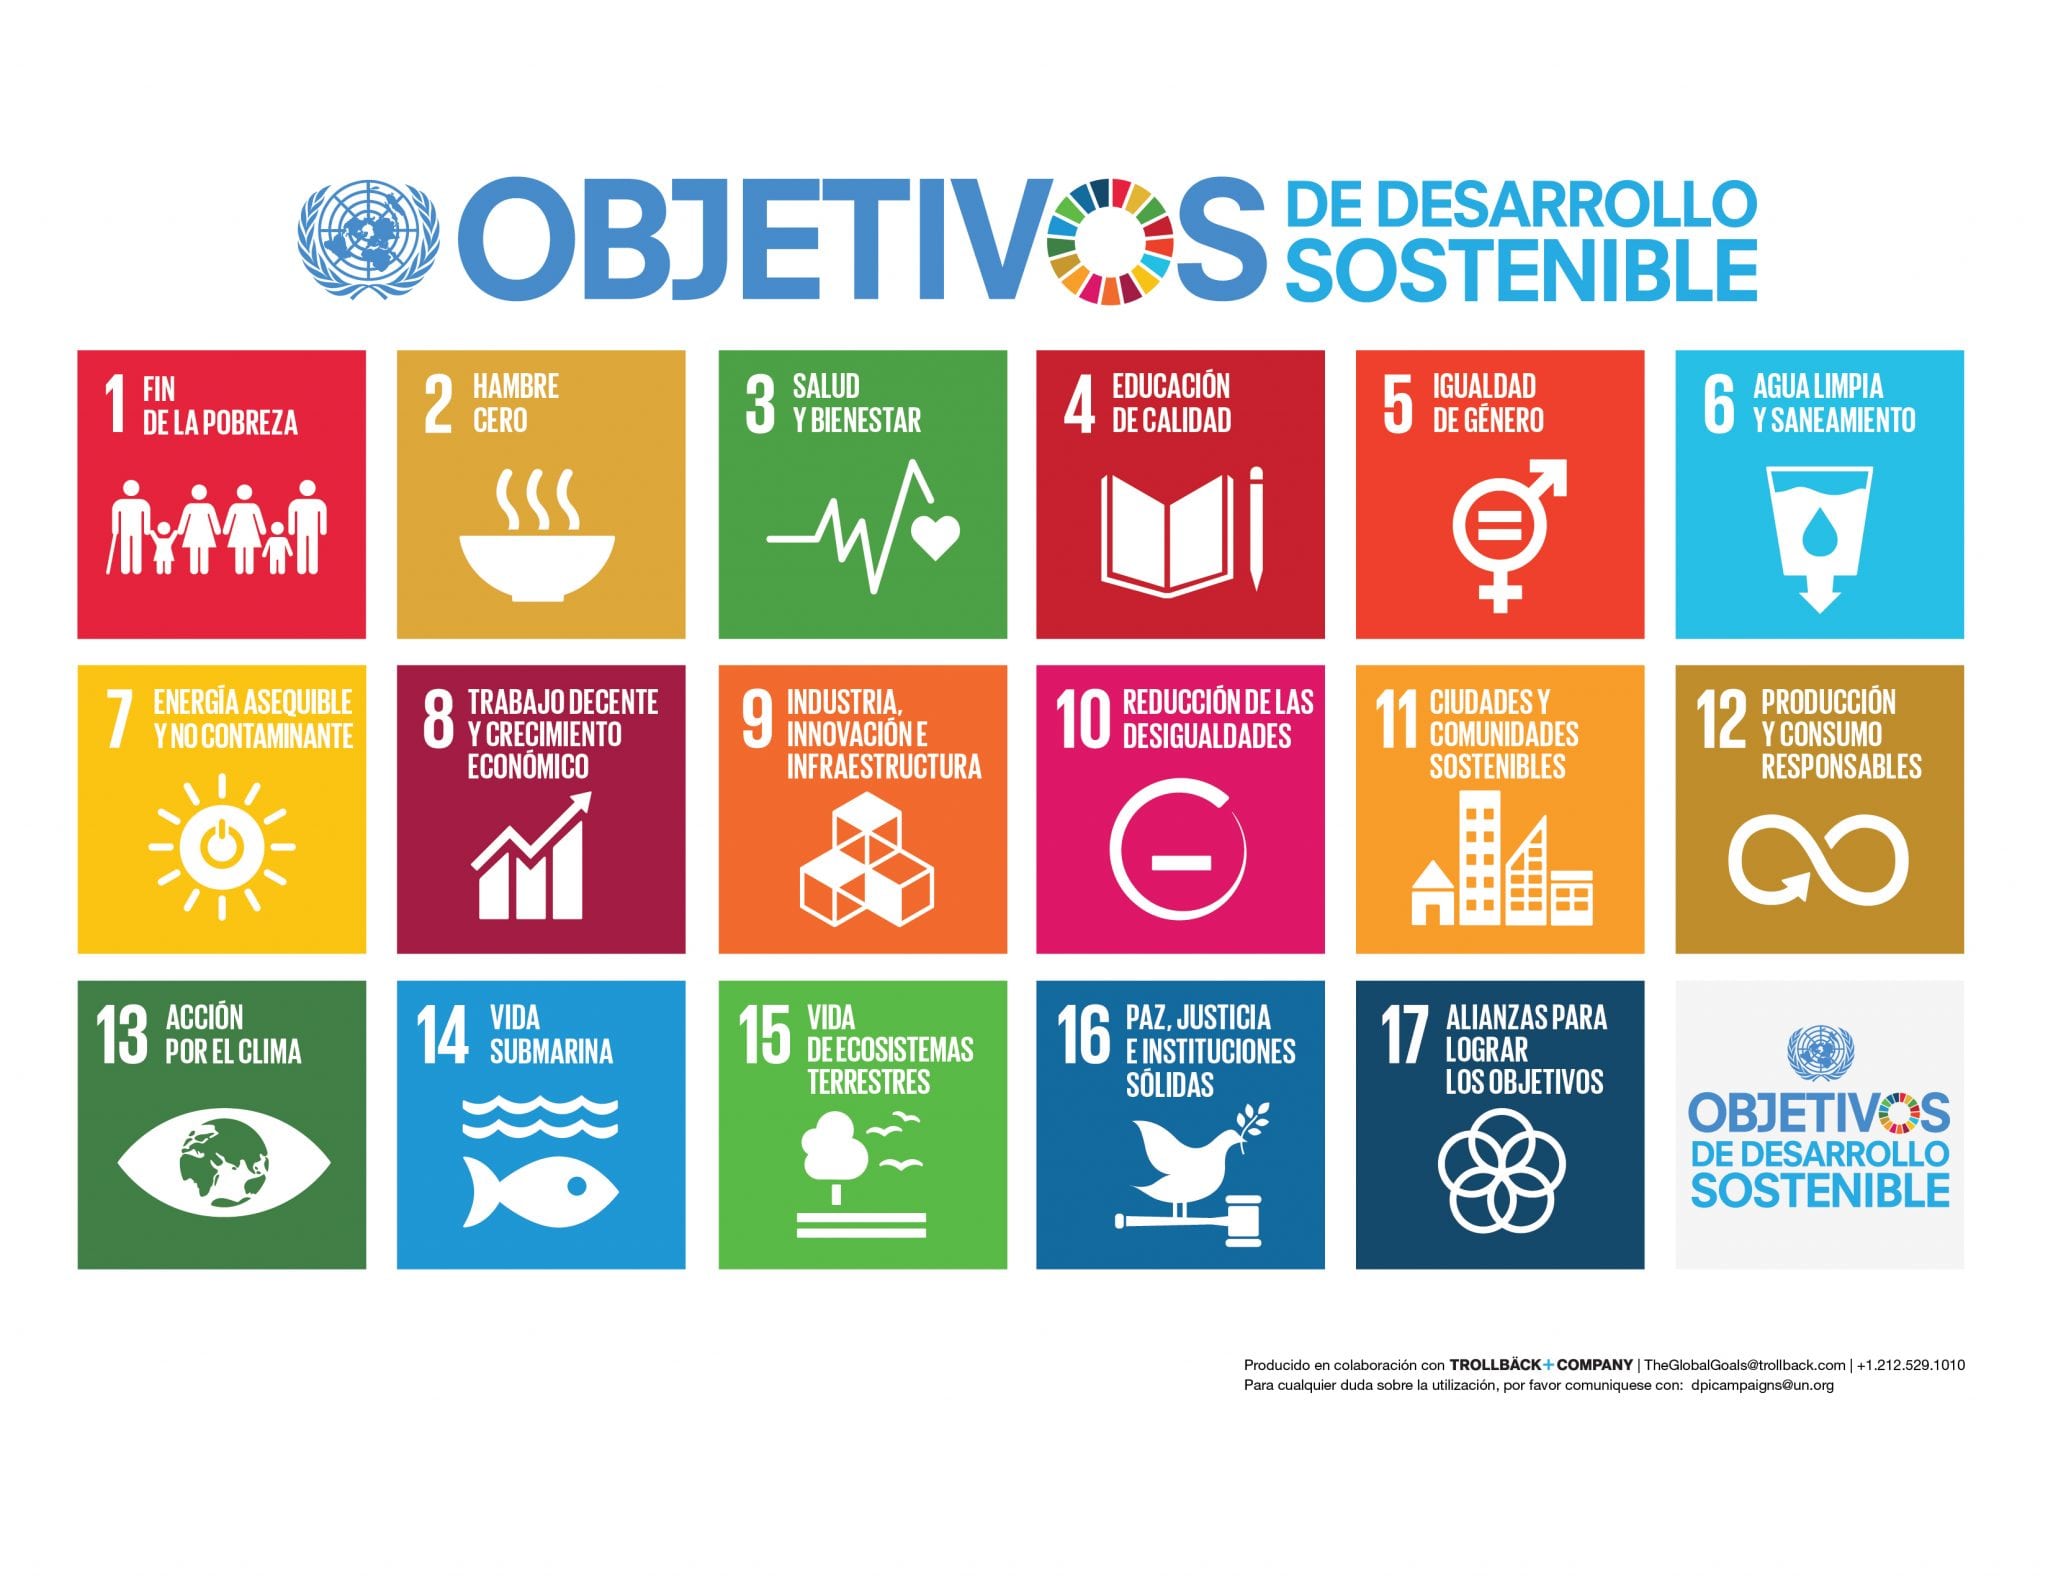 foto #1 de la noticia: CERTIFICACIÓN DE LA SOSTENIBILIDAD. Objetivos de Desarrollo Sostenible (ODS)